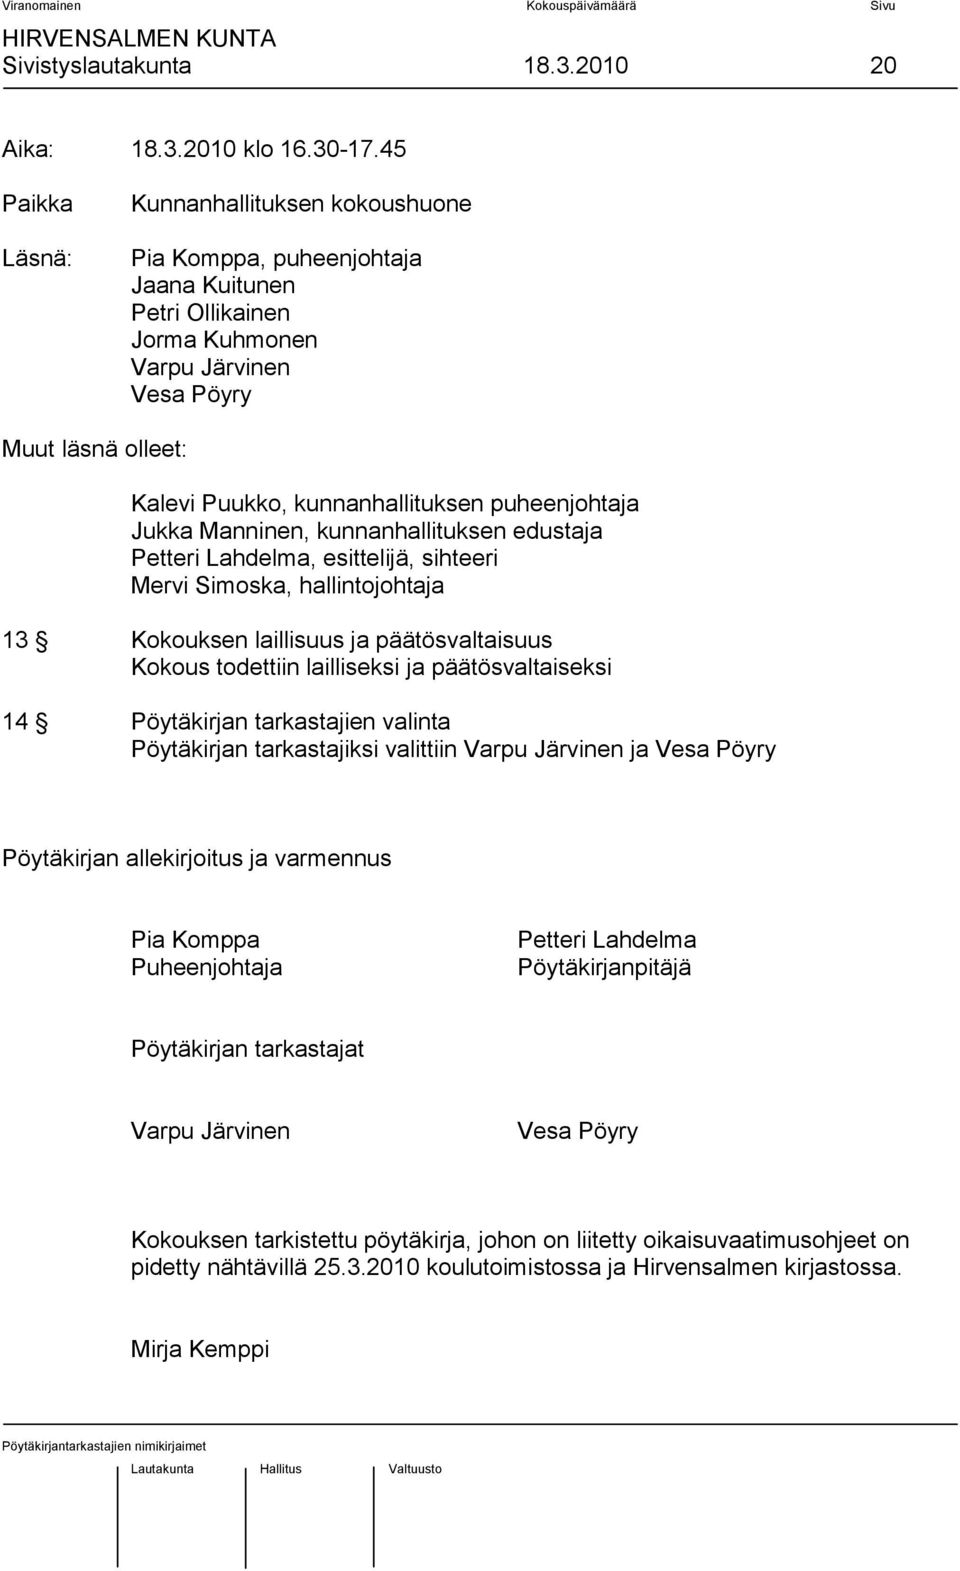 puheenjohtaja Jukka Manninen, kunnanhallituksen edustaja Petteri Lahdelma, esittelijä, sihteeri Mervi Simoska, hallintojohtaja 13 Kokouksen laillisuus ja päätösvaltaisuus Kokous todettiin lailliseksi